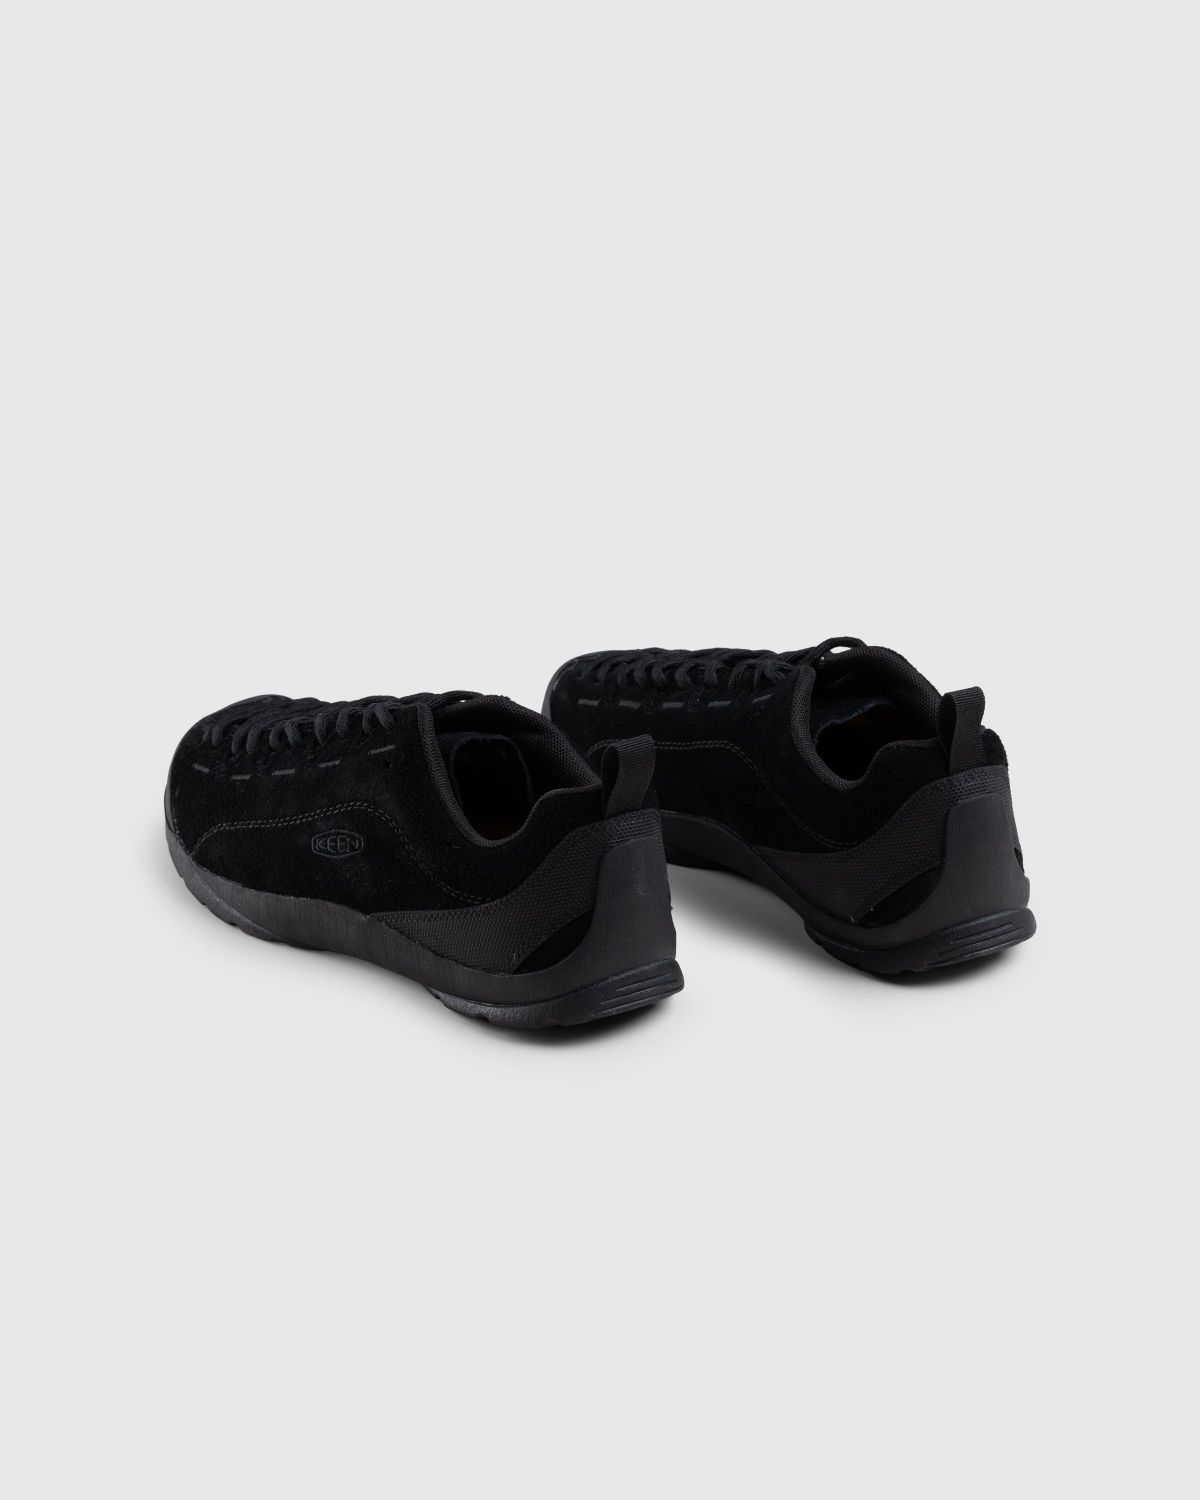 Keen – Jasper Black - Low Top Sneakers - Black - Image 4